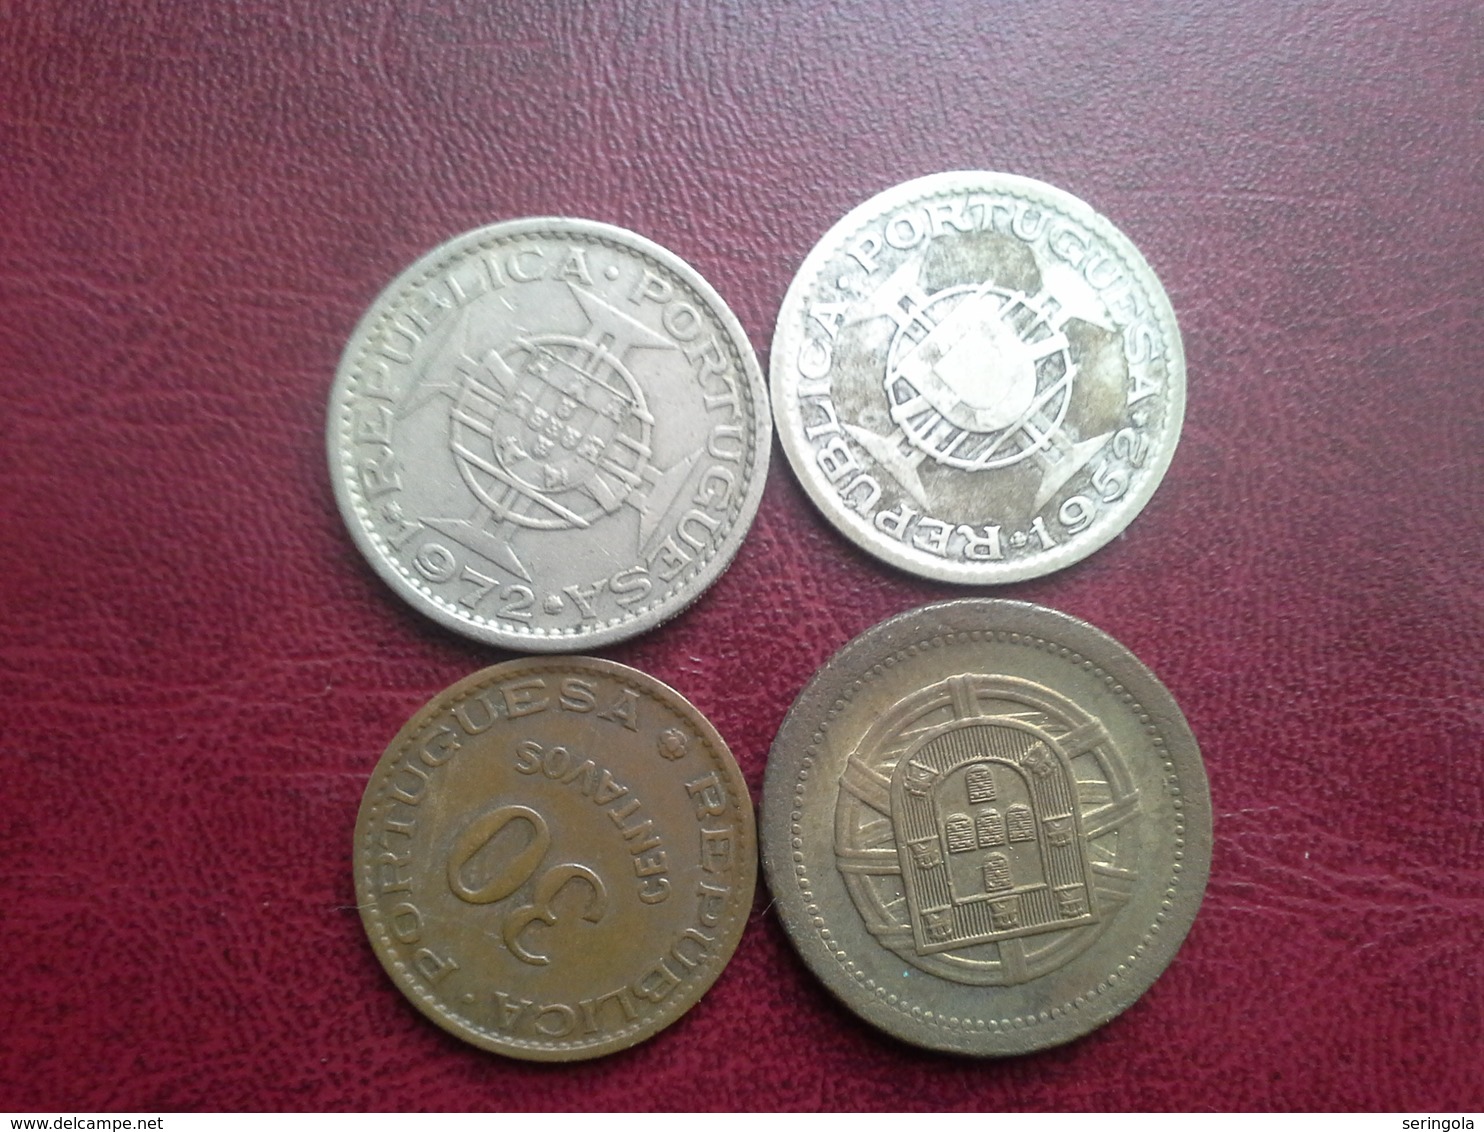 5 Cent.1921, 30 Cent.1958 Timor, 5esc.1972 Angola, 10esc. 1952 Guine - Portugal